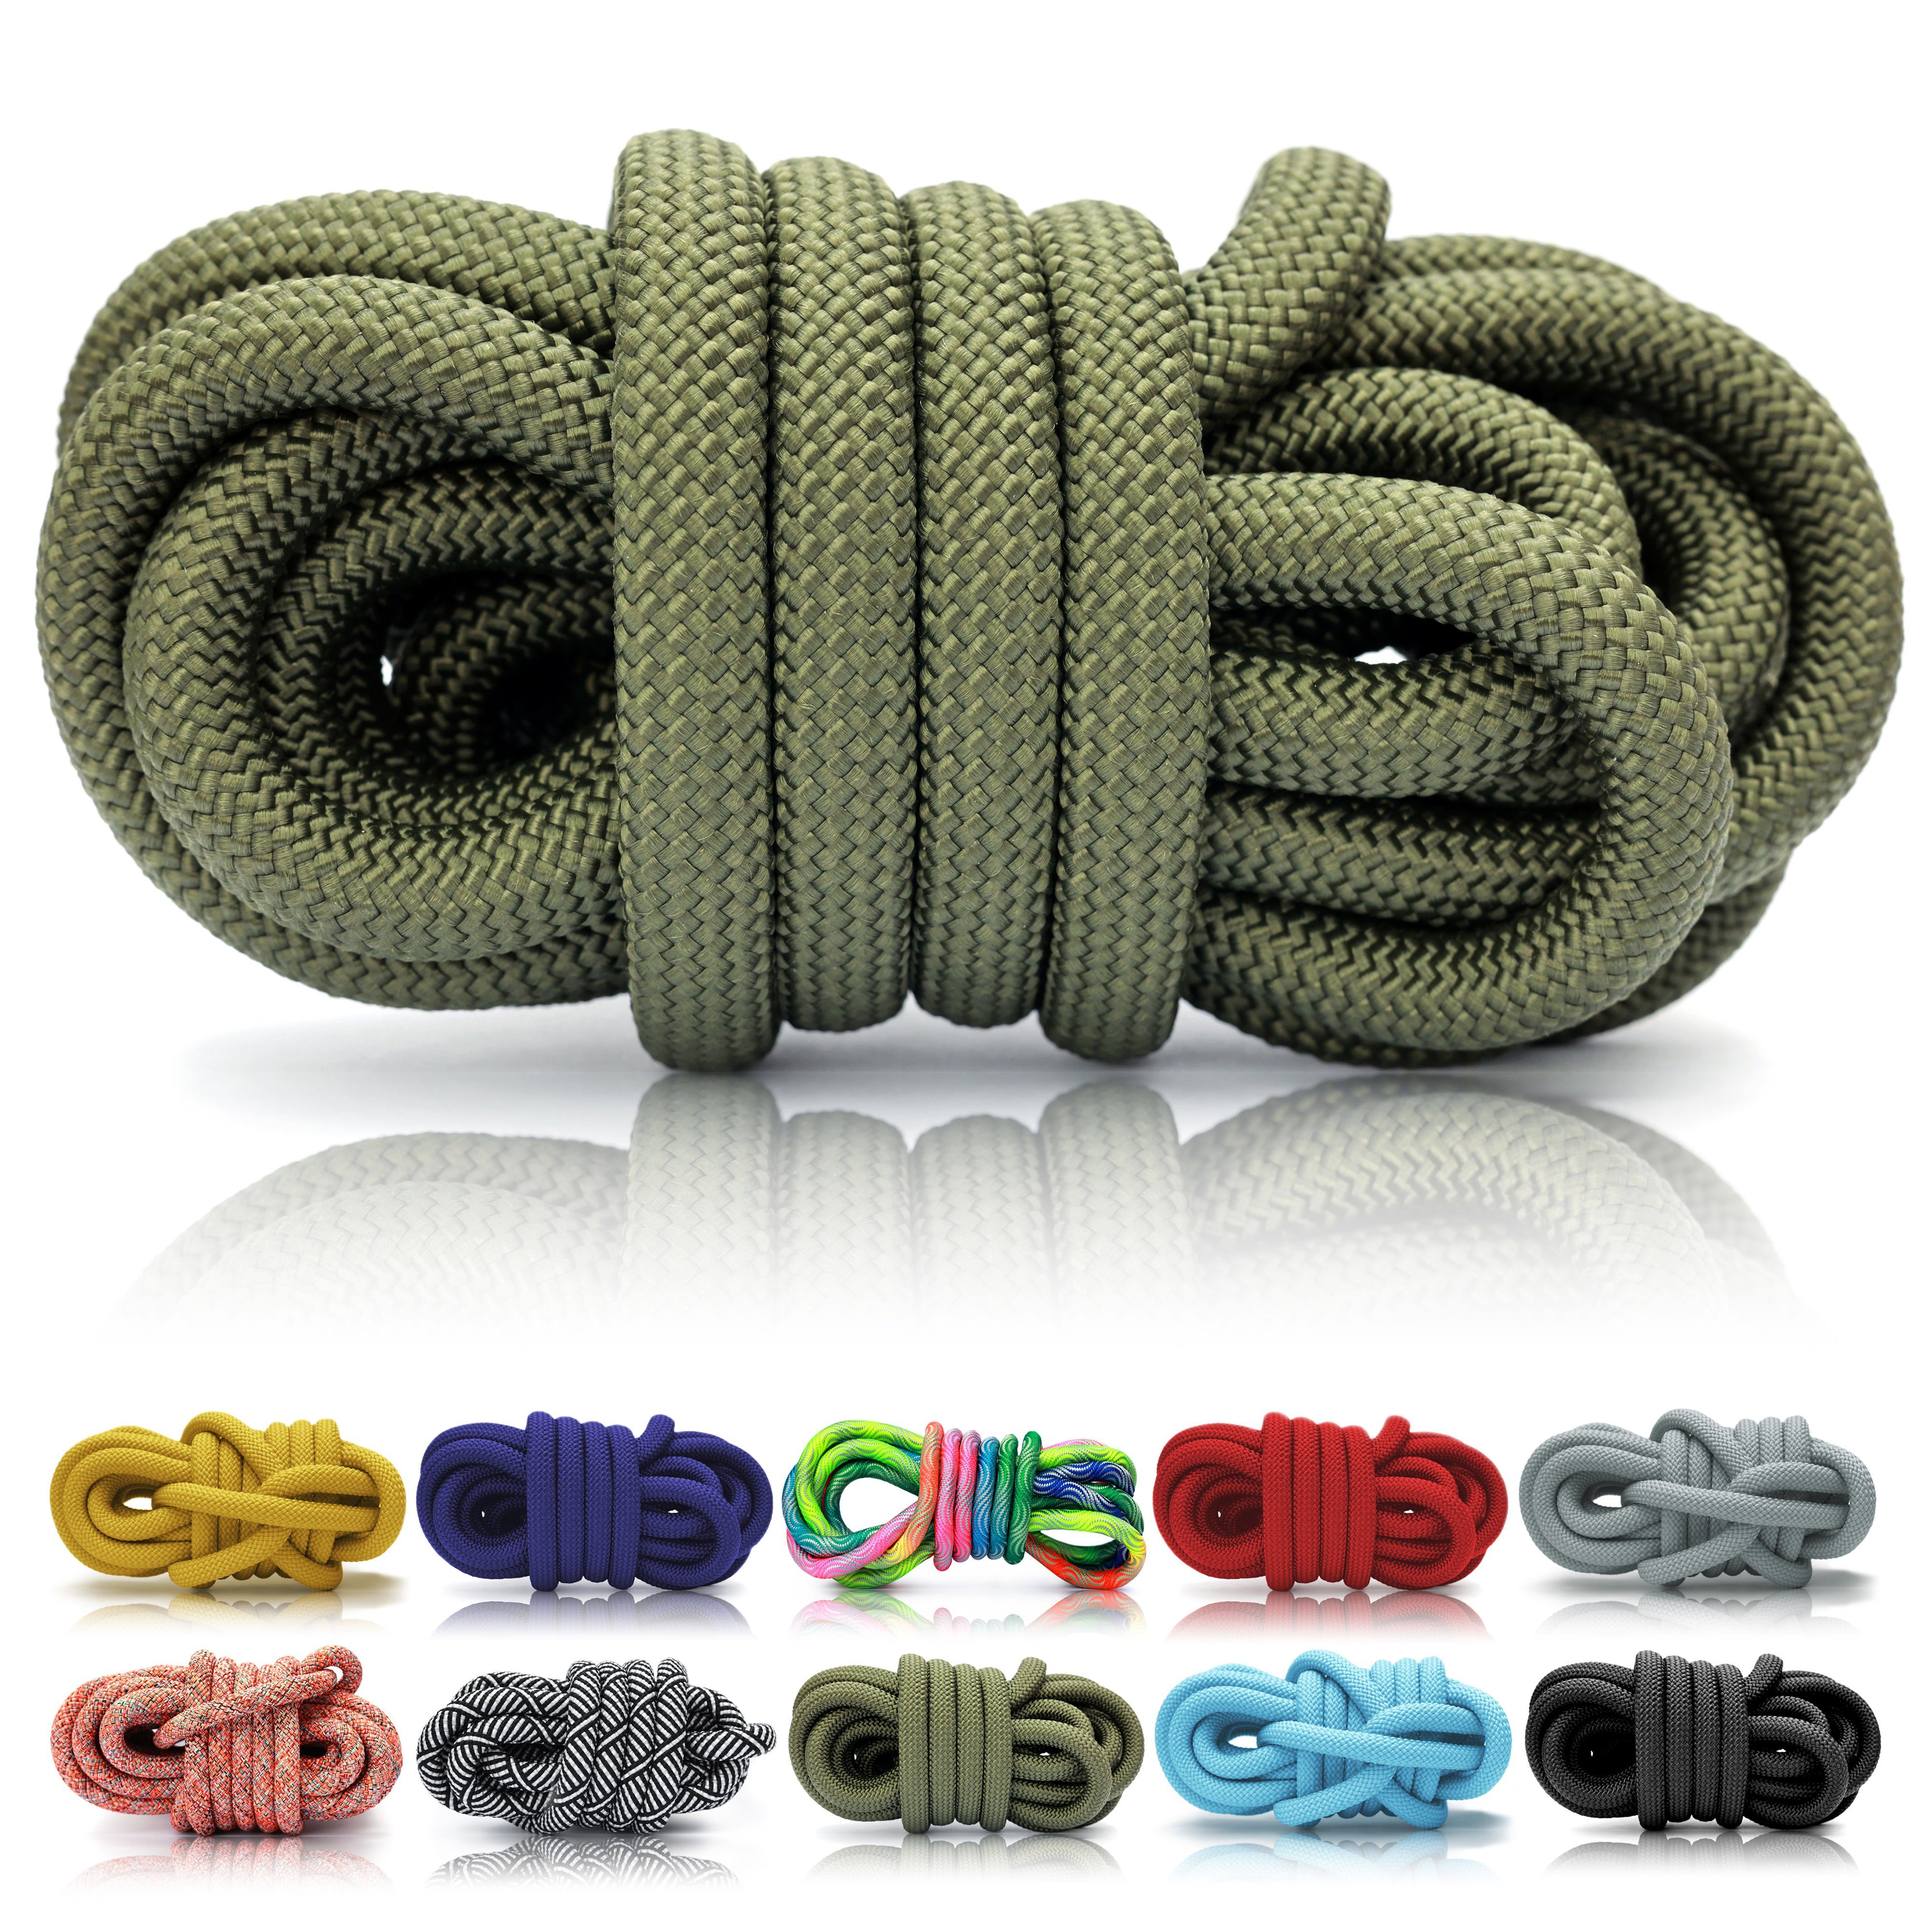 Ganzoo PPM Seil 5 Meter, Tauseil, Hunde-Leine, Halsband, Takeln, 8mm, Grün Reepschnur